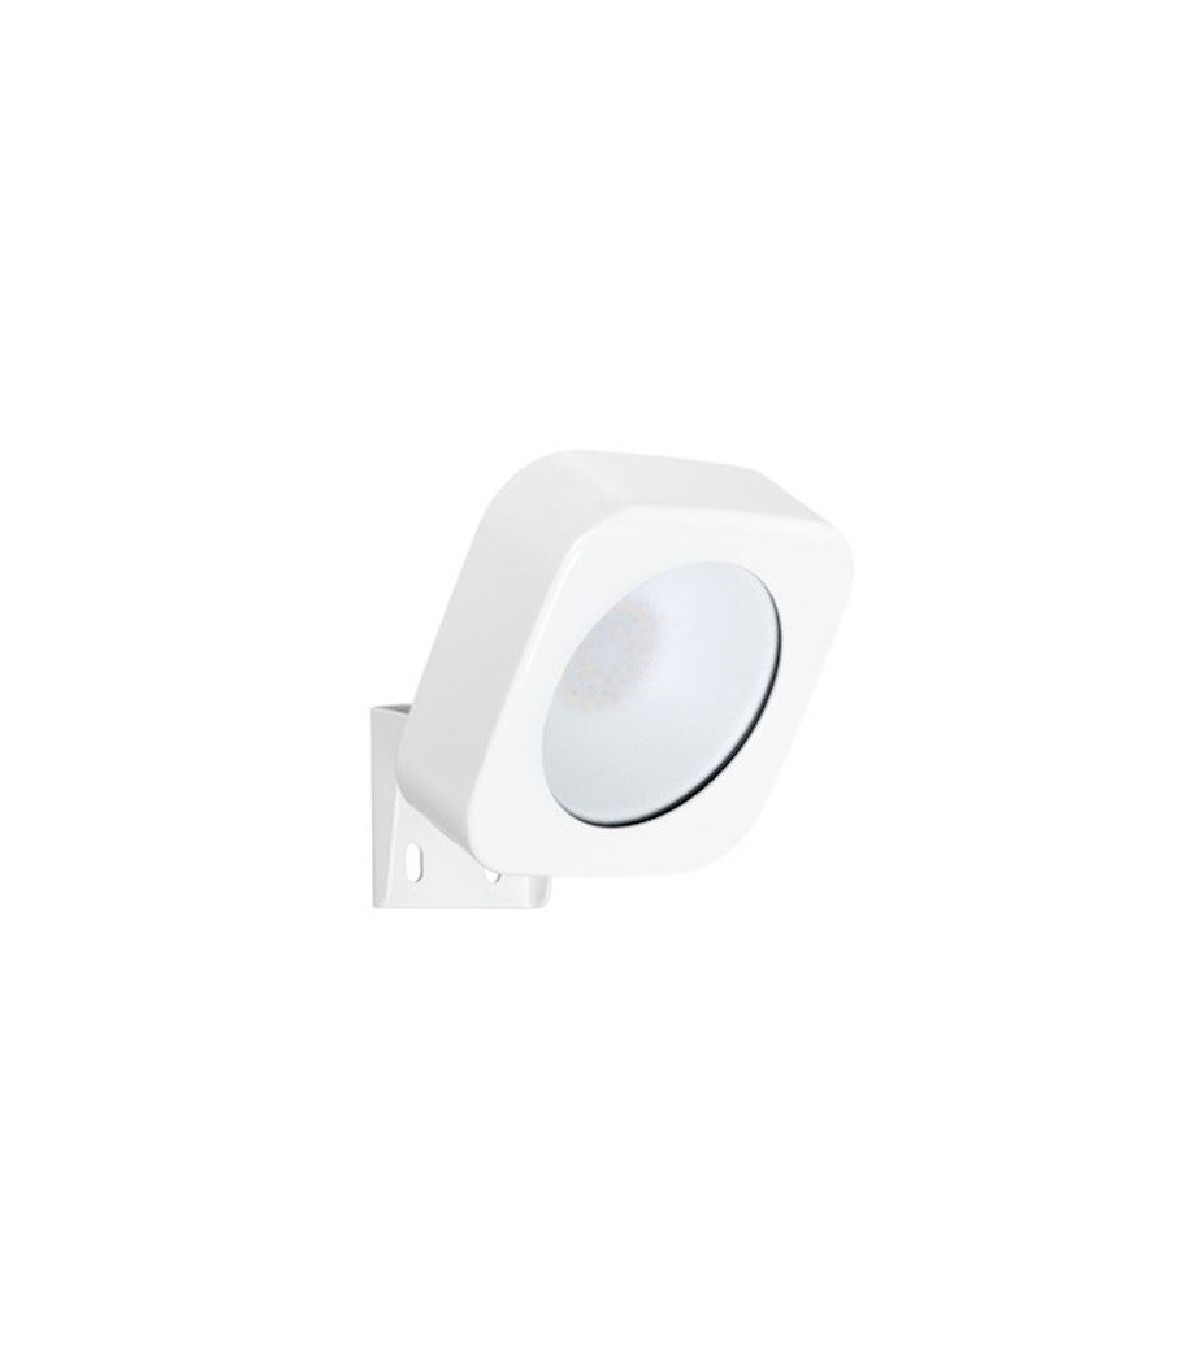 ARIC 50501  Projecteur extérieur Blanc - Led 20W - blanc chaud